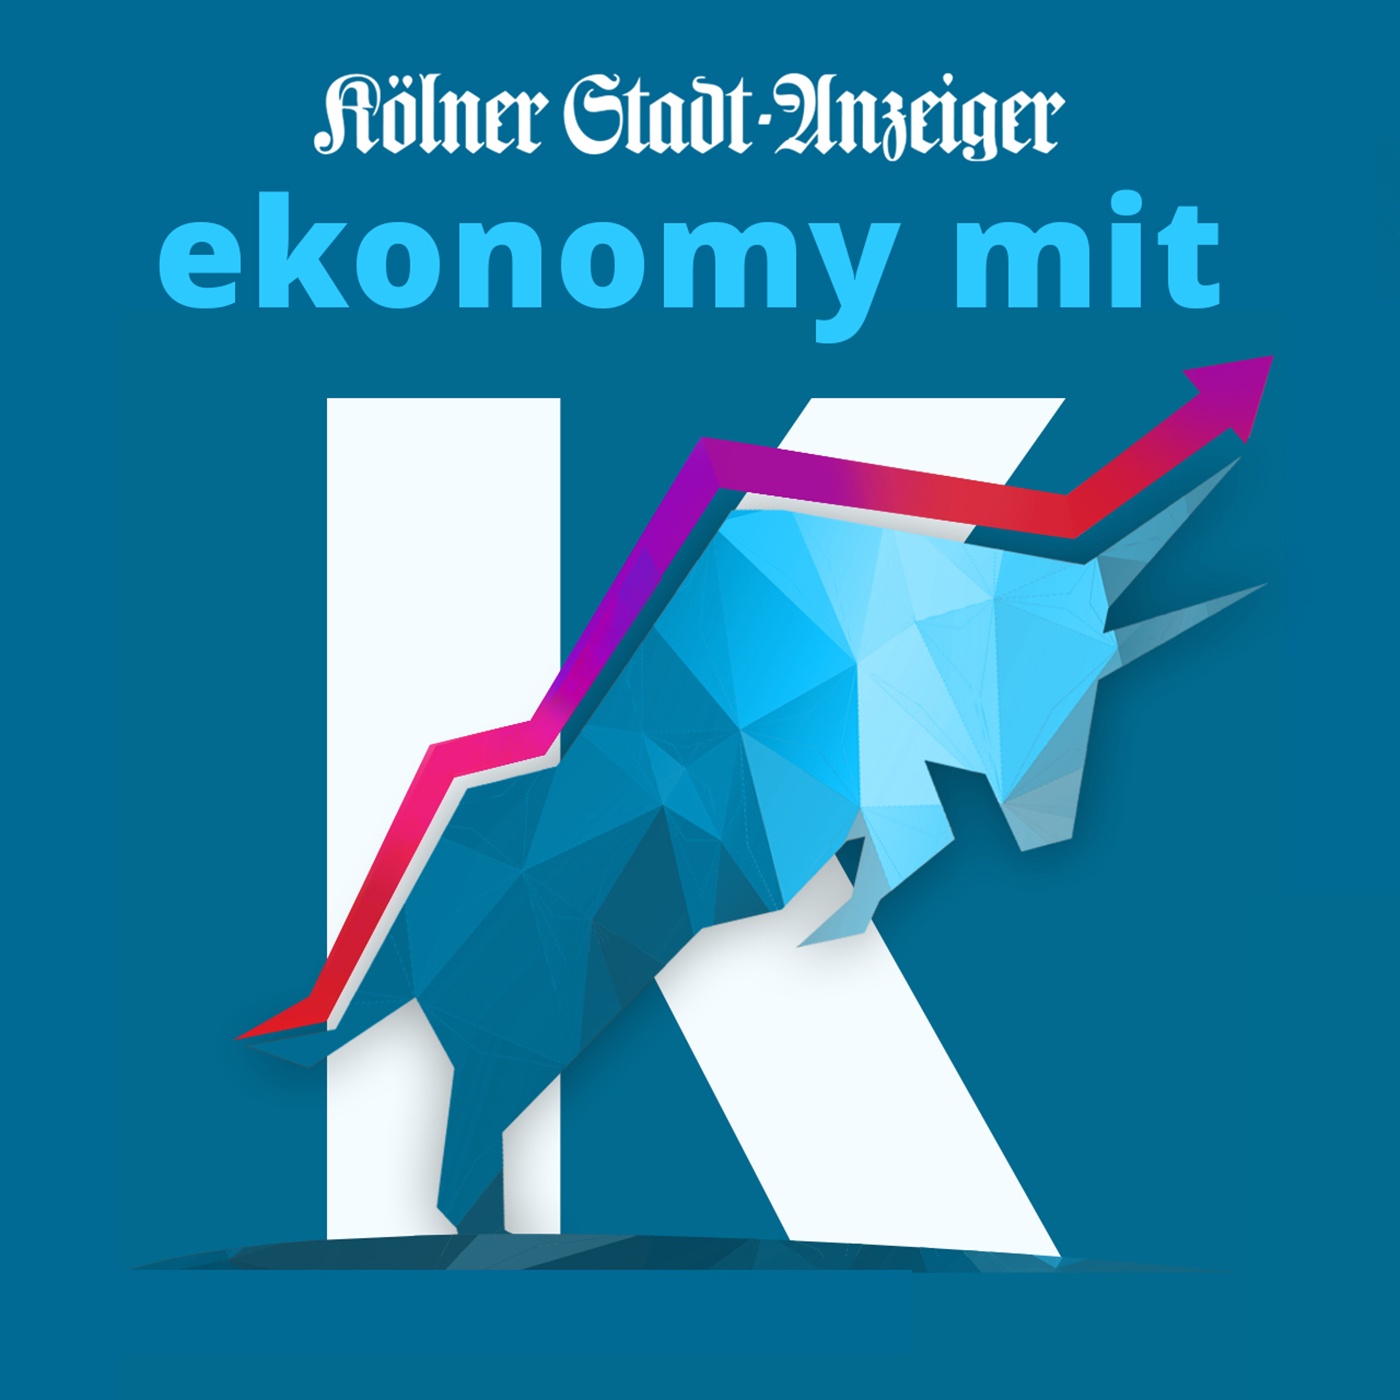 ekonomy mit K - der Wirtschafts-Podcast des Kölner Stadt-Anzeiger